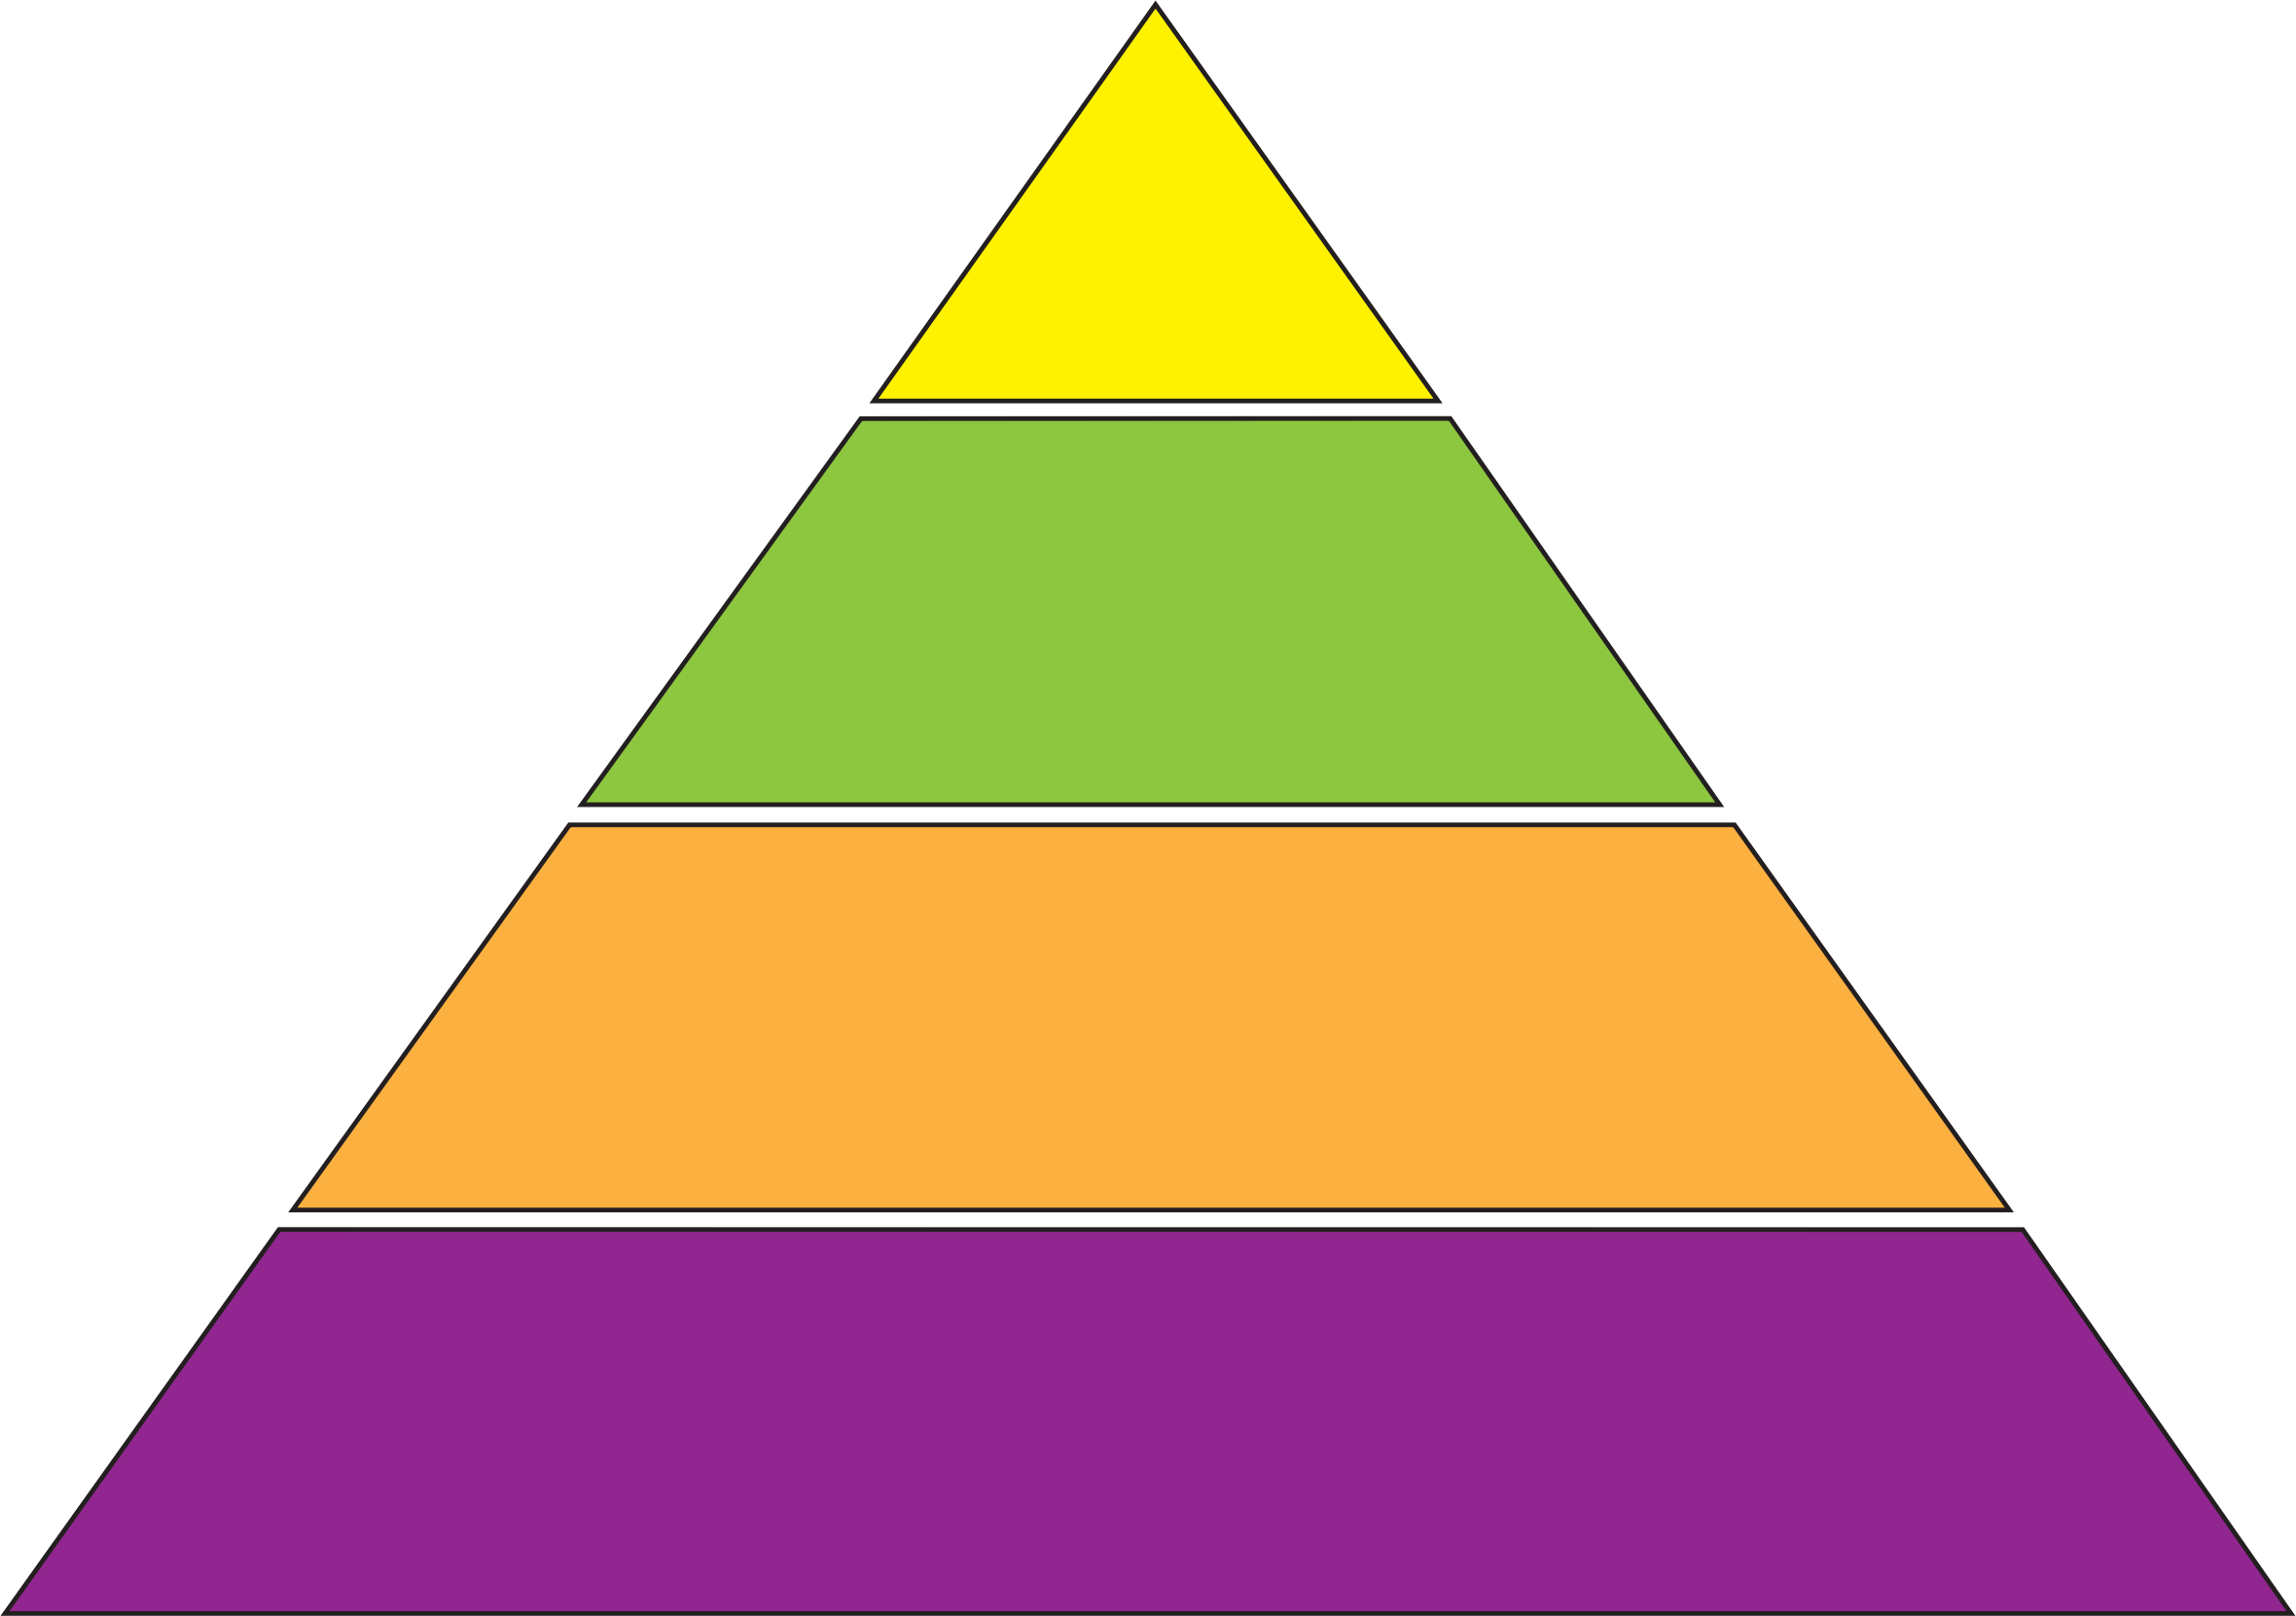 empty-energy-pyramid-energy-etfs